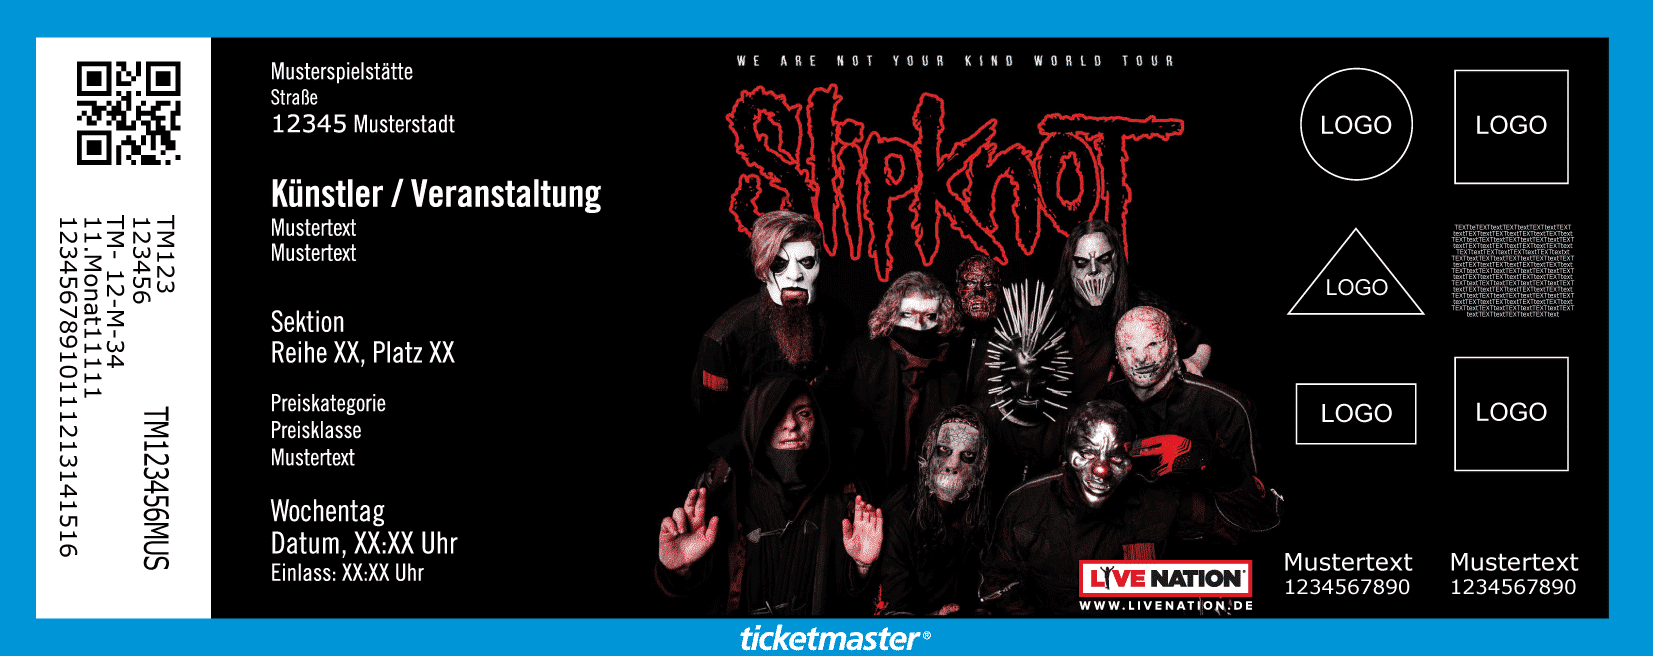 Slipknot kündigen zwei OpenAirKonzerte für 2020 an Ticketmaster Blog